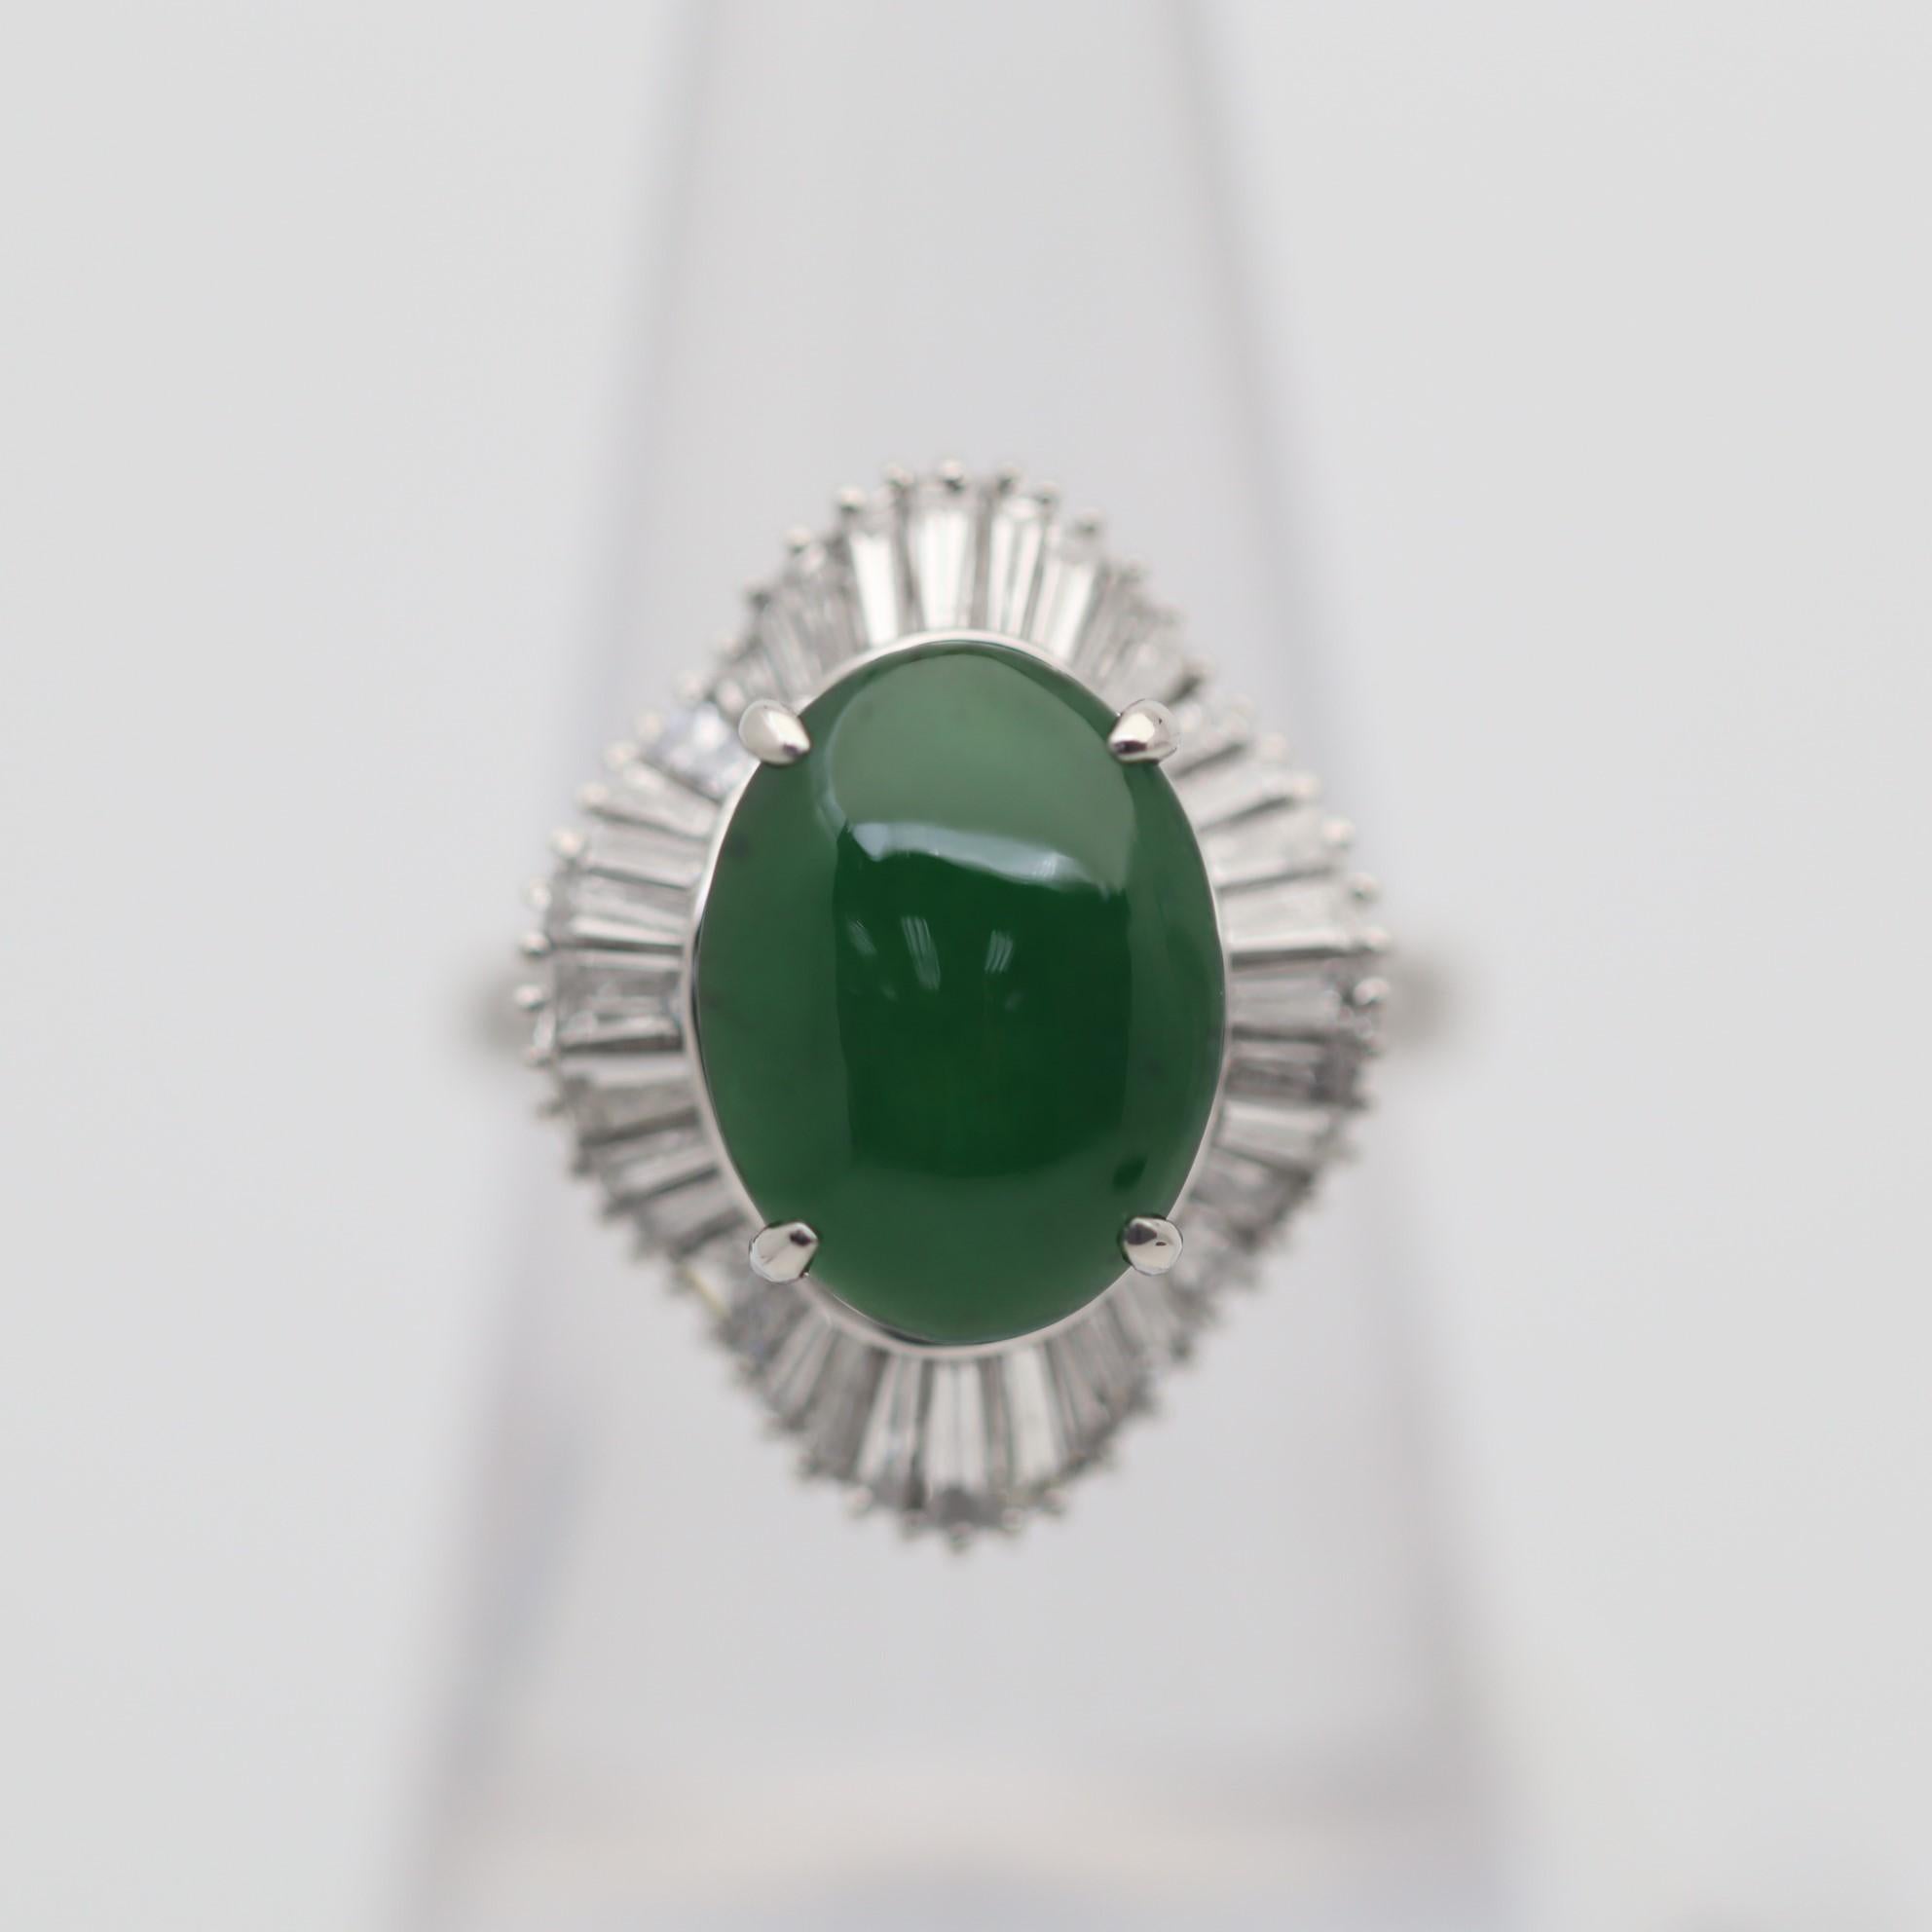 Bague en platine de belle facture, ornée d'une fine pièce de jadéite. Le jade pèse 2,75 carats et présente une riche couleur vert gazon. Il est rehaussé de 1,39 carats de diamants de taille baguette qui entourent le jade à la manière d'une